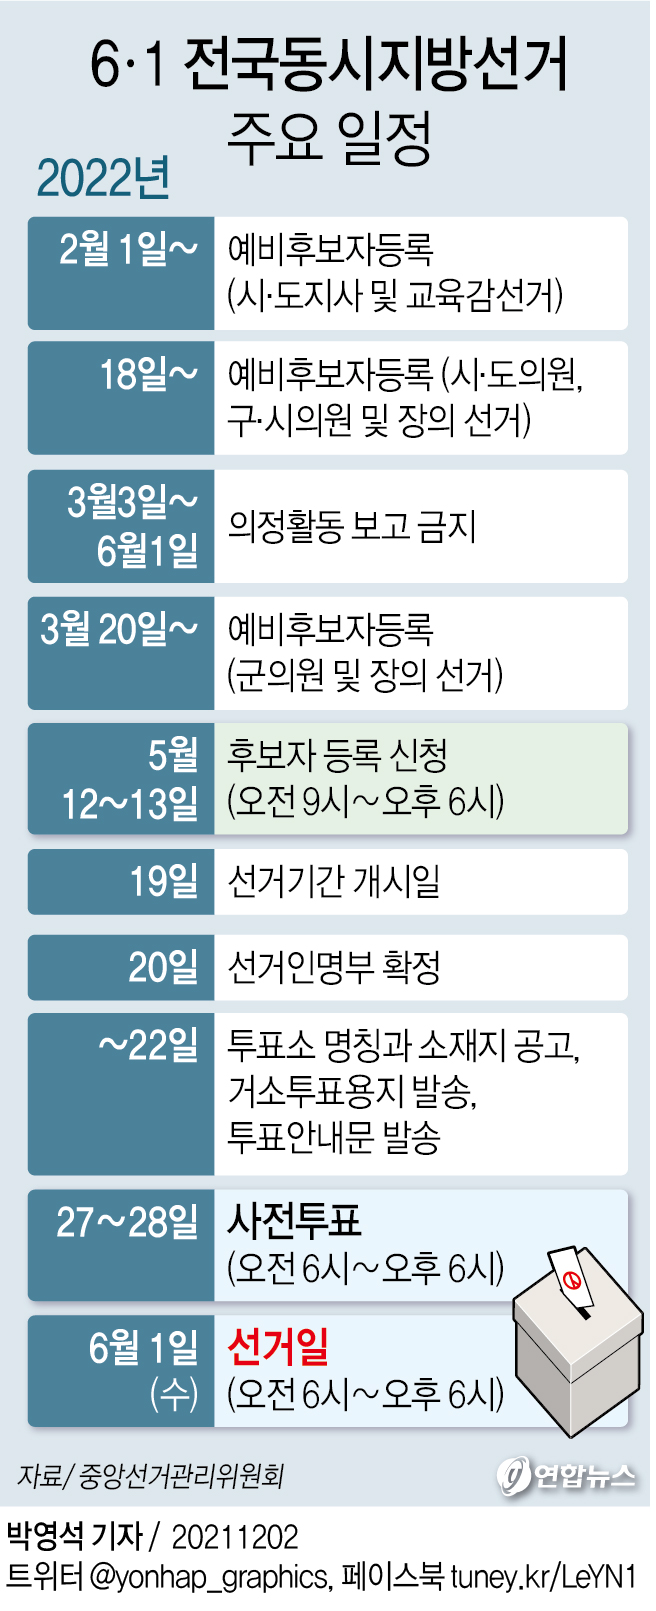 [그래픽] 6·1 전국동시지방선거 주요 일정